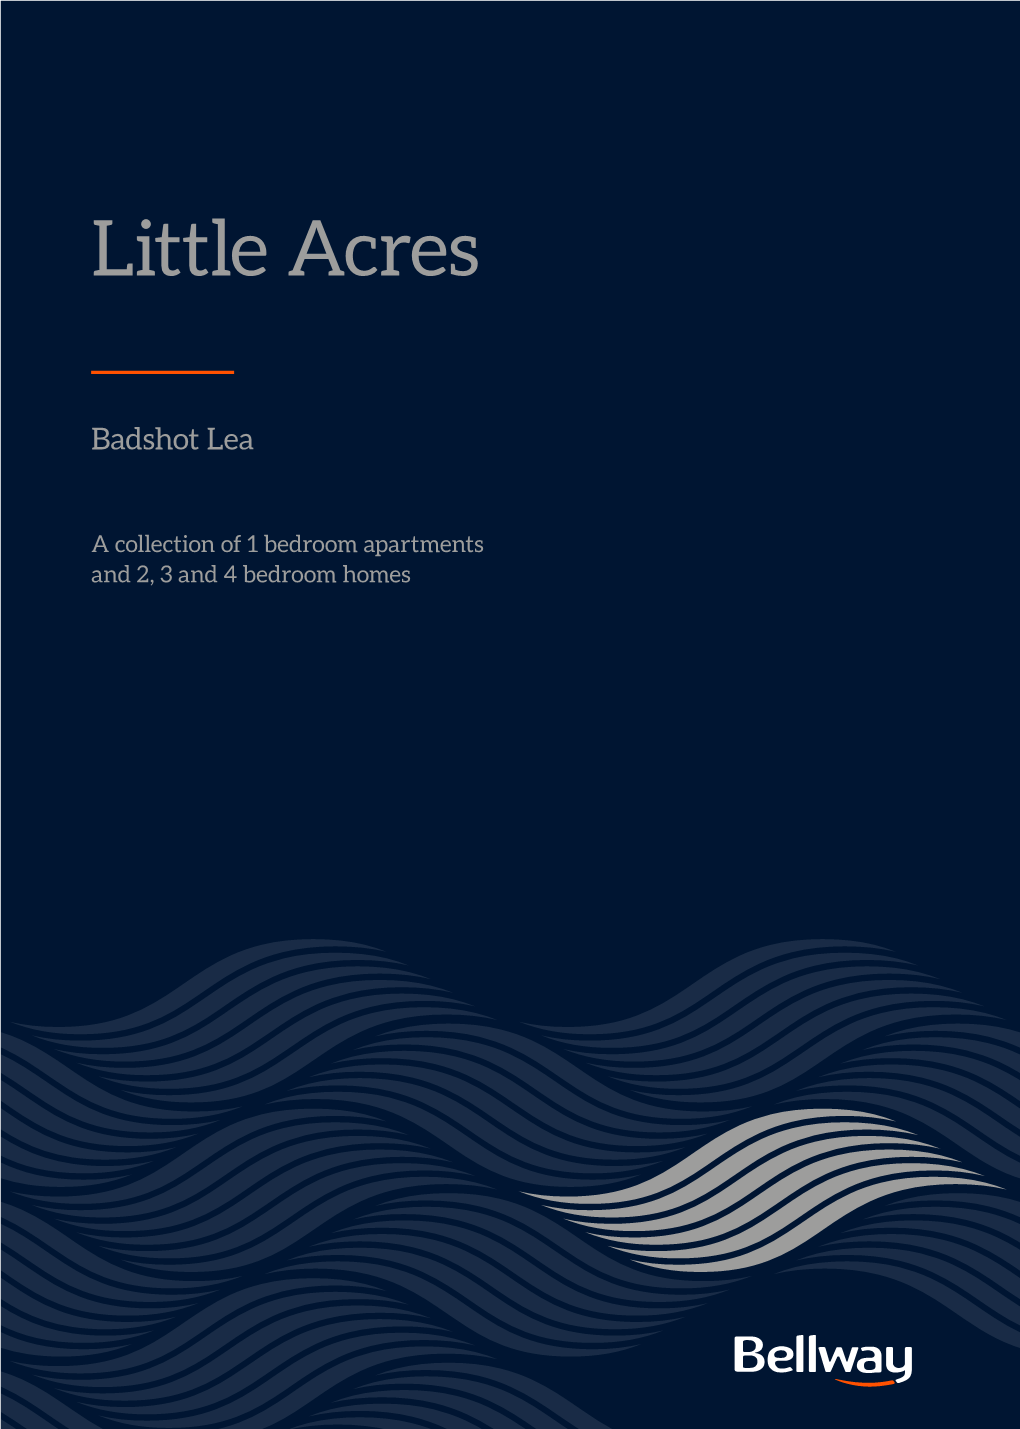 Little Acres